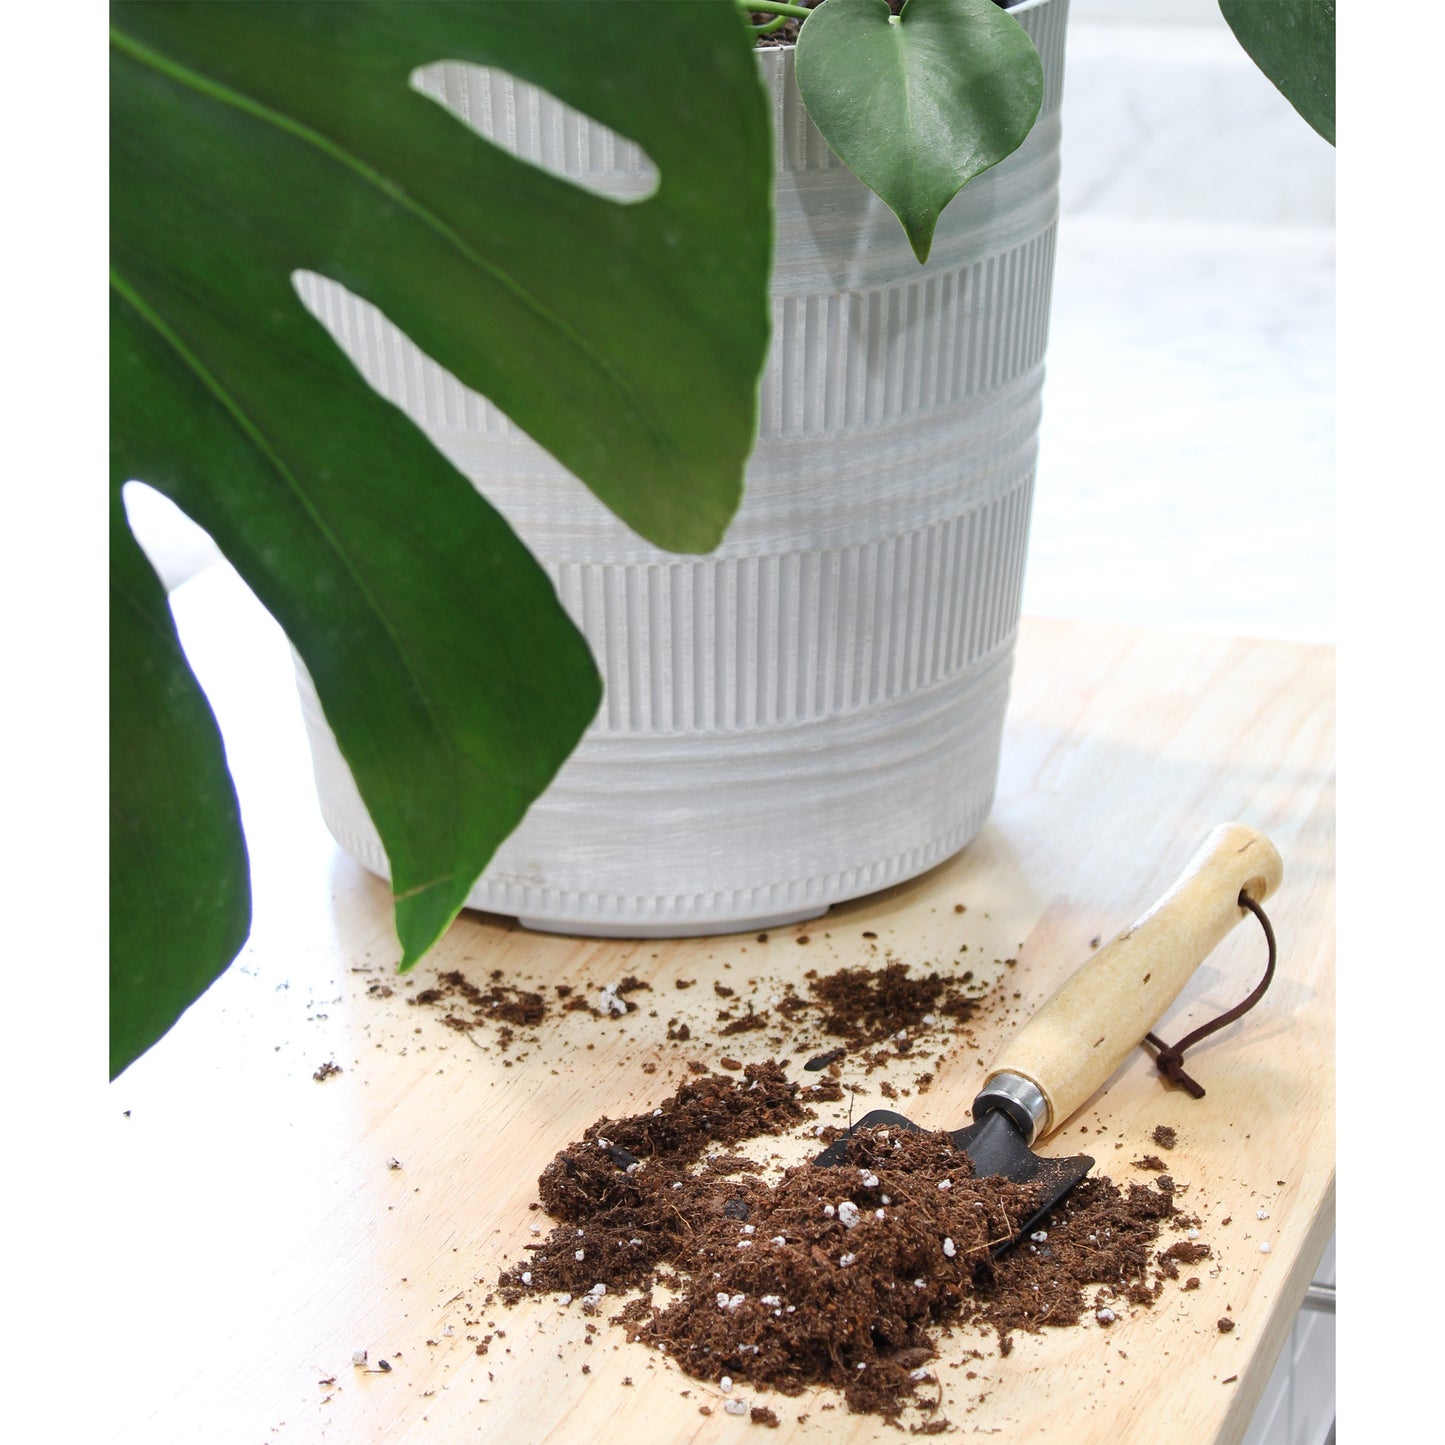 Monstera Houseplant Potting Soil Mix (4 Quarts) - SSKIT069